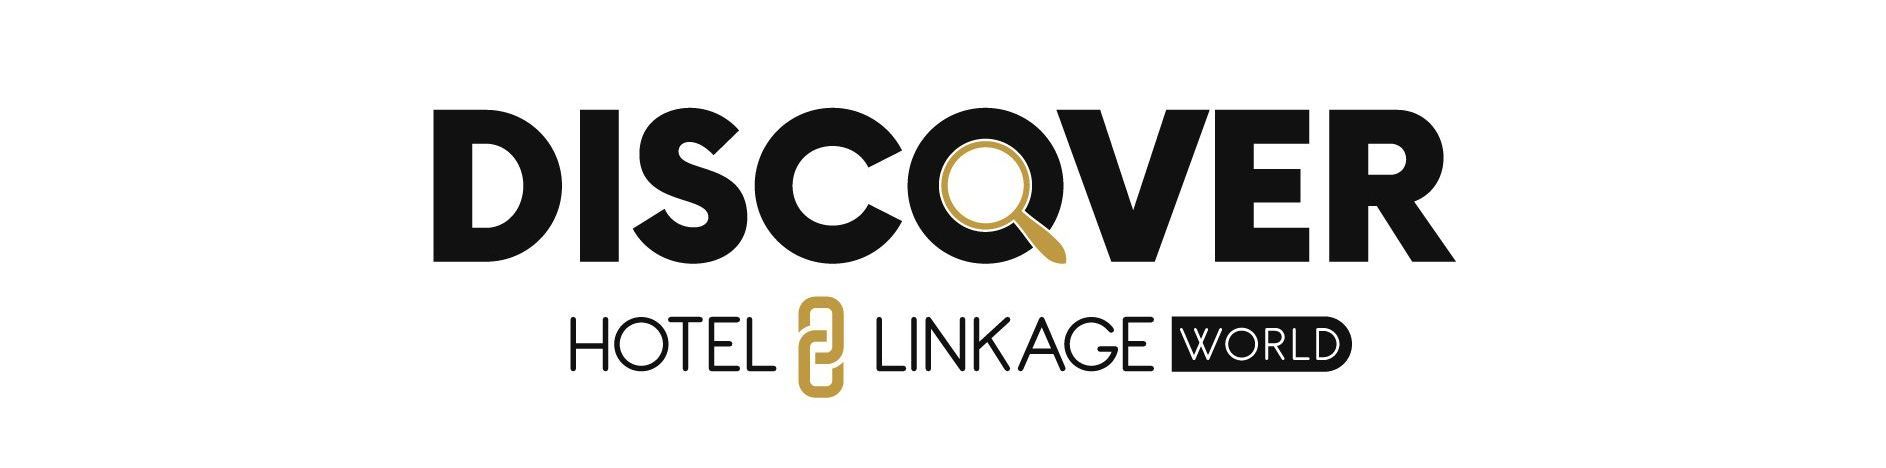 Discover Hotel Linkage CRS Logosu, Hotel Linkage ürünlerinin anlatıldığı bir webinar serisi